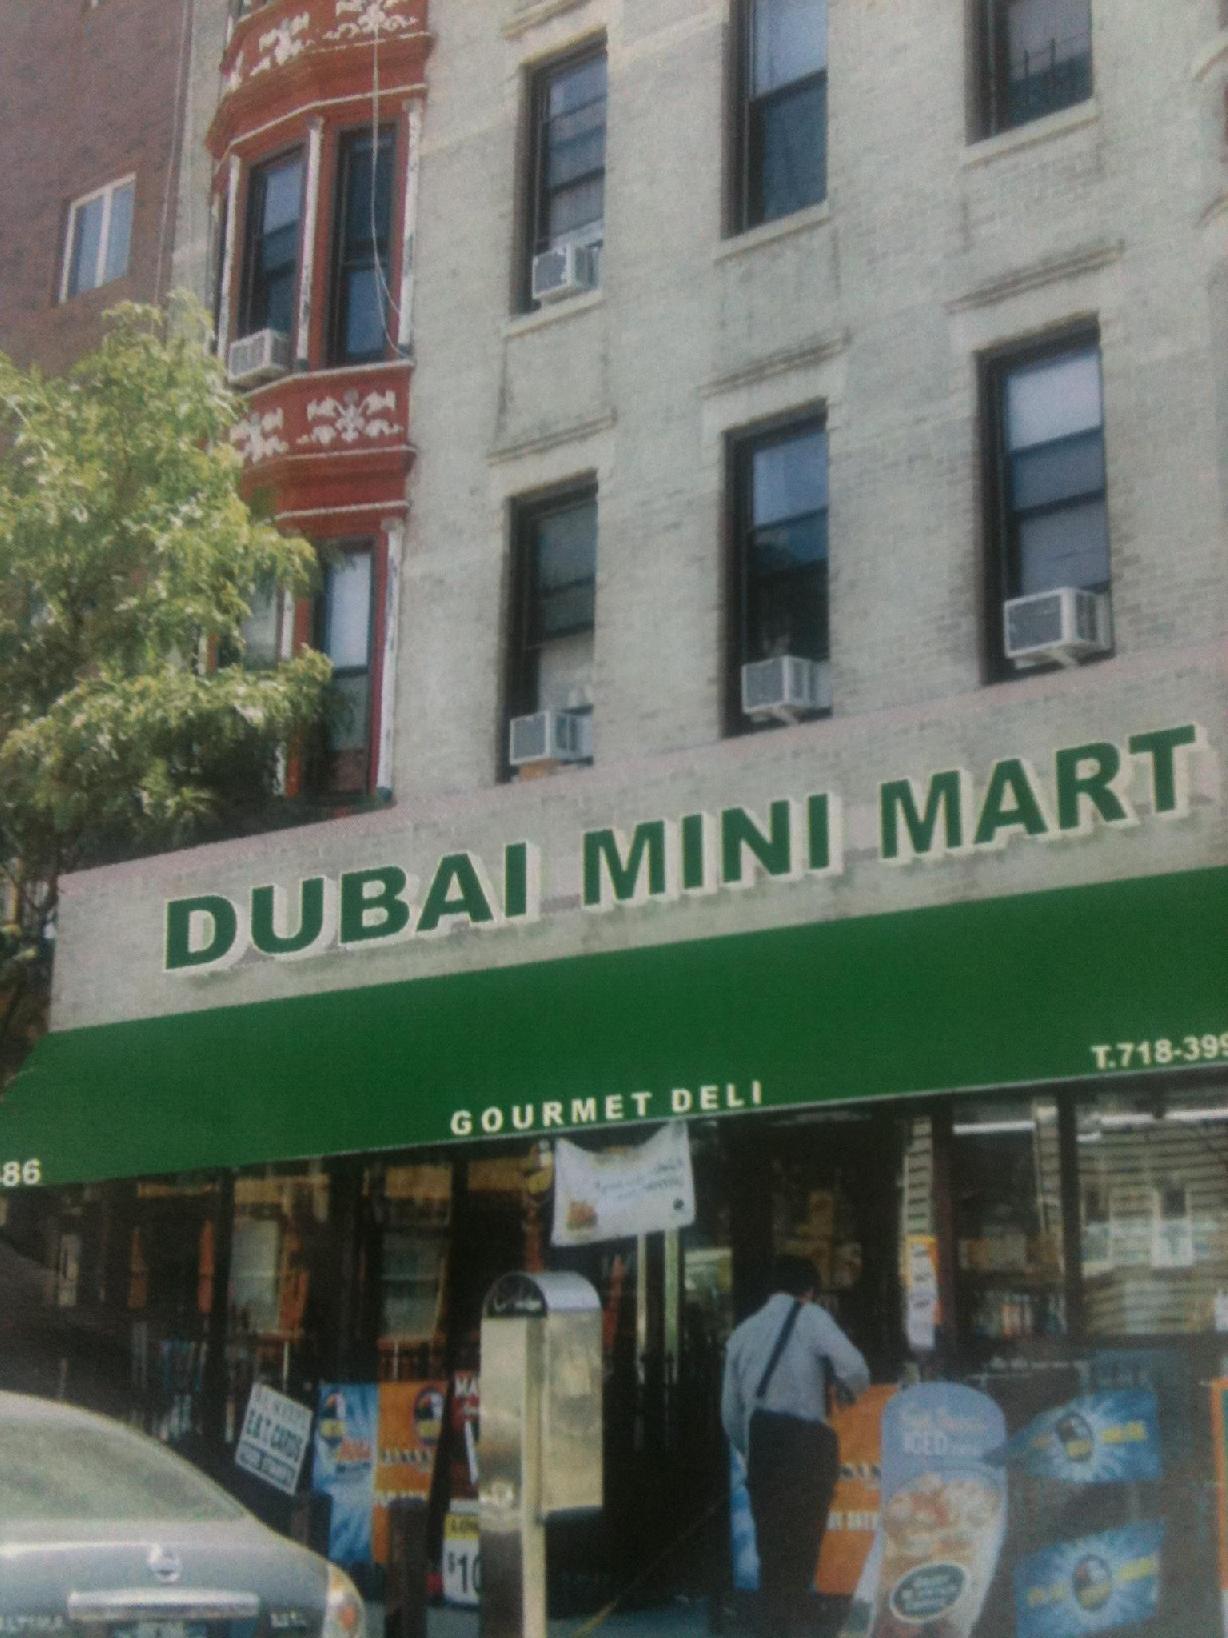 Dubai Minimart